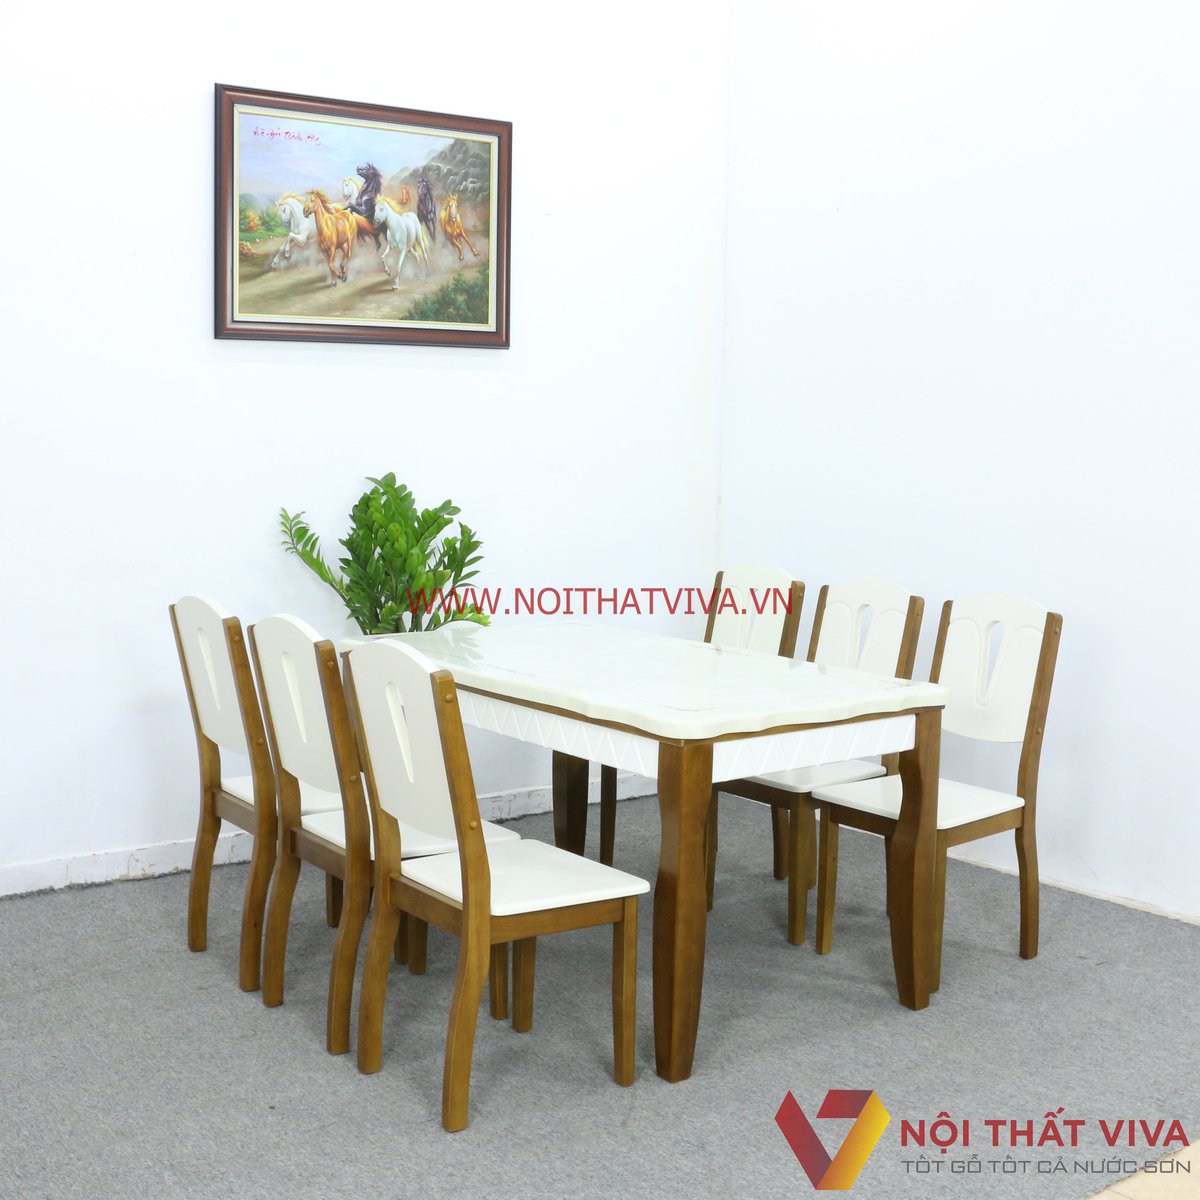 Bộ bàn ăn 4 ghế gỗ sồi nga giá rẻ,bàn ăn gỗ tự nhiên giá rẻ quận 12 tp HCM